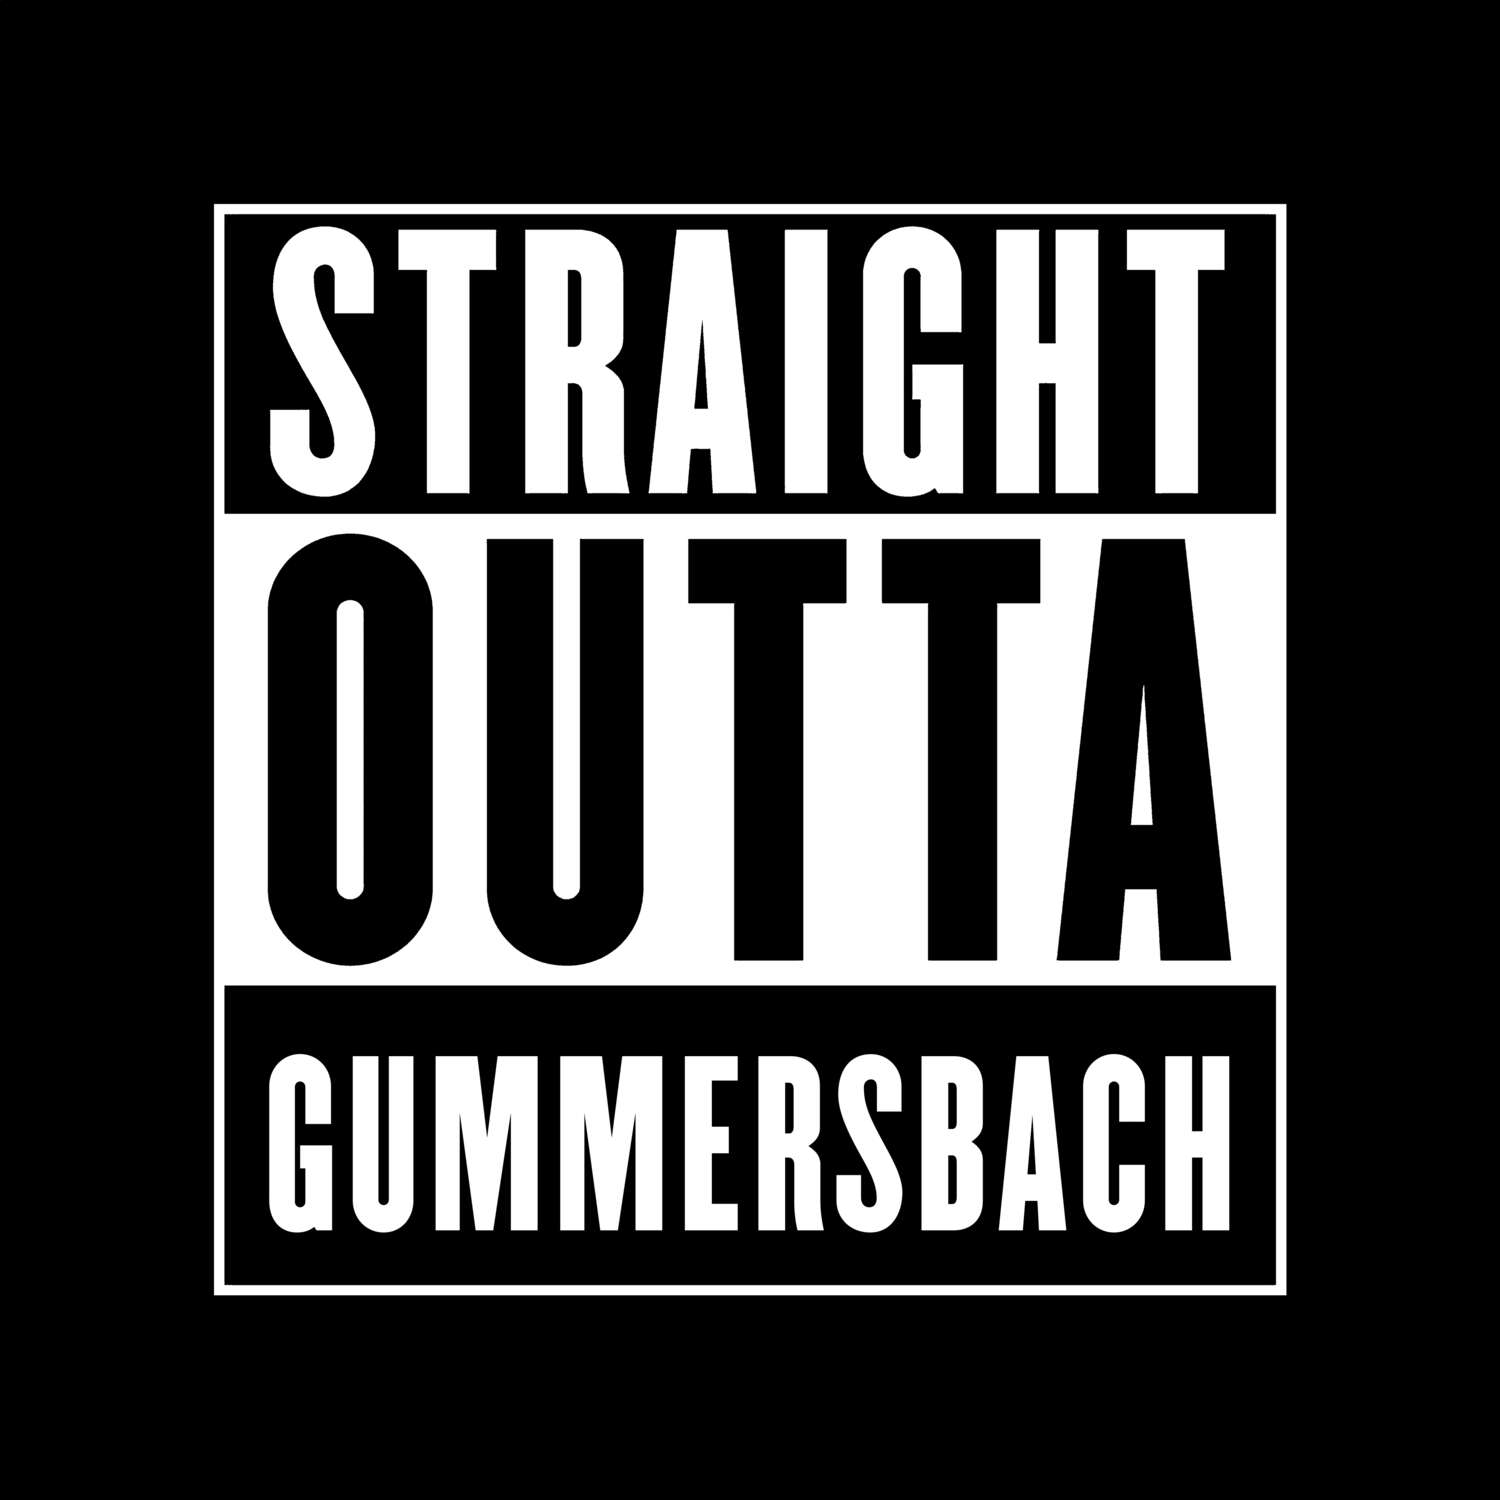 Gummersbach T-Shirt »Straight Outta«